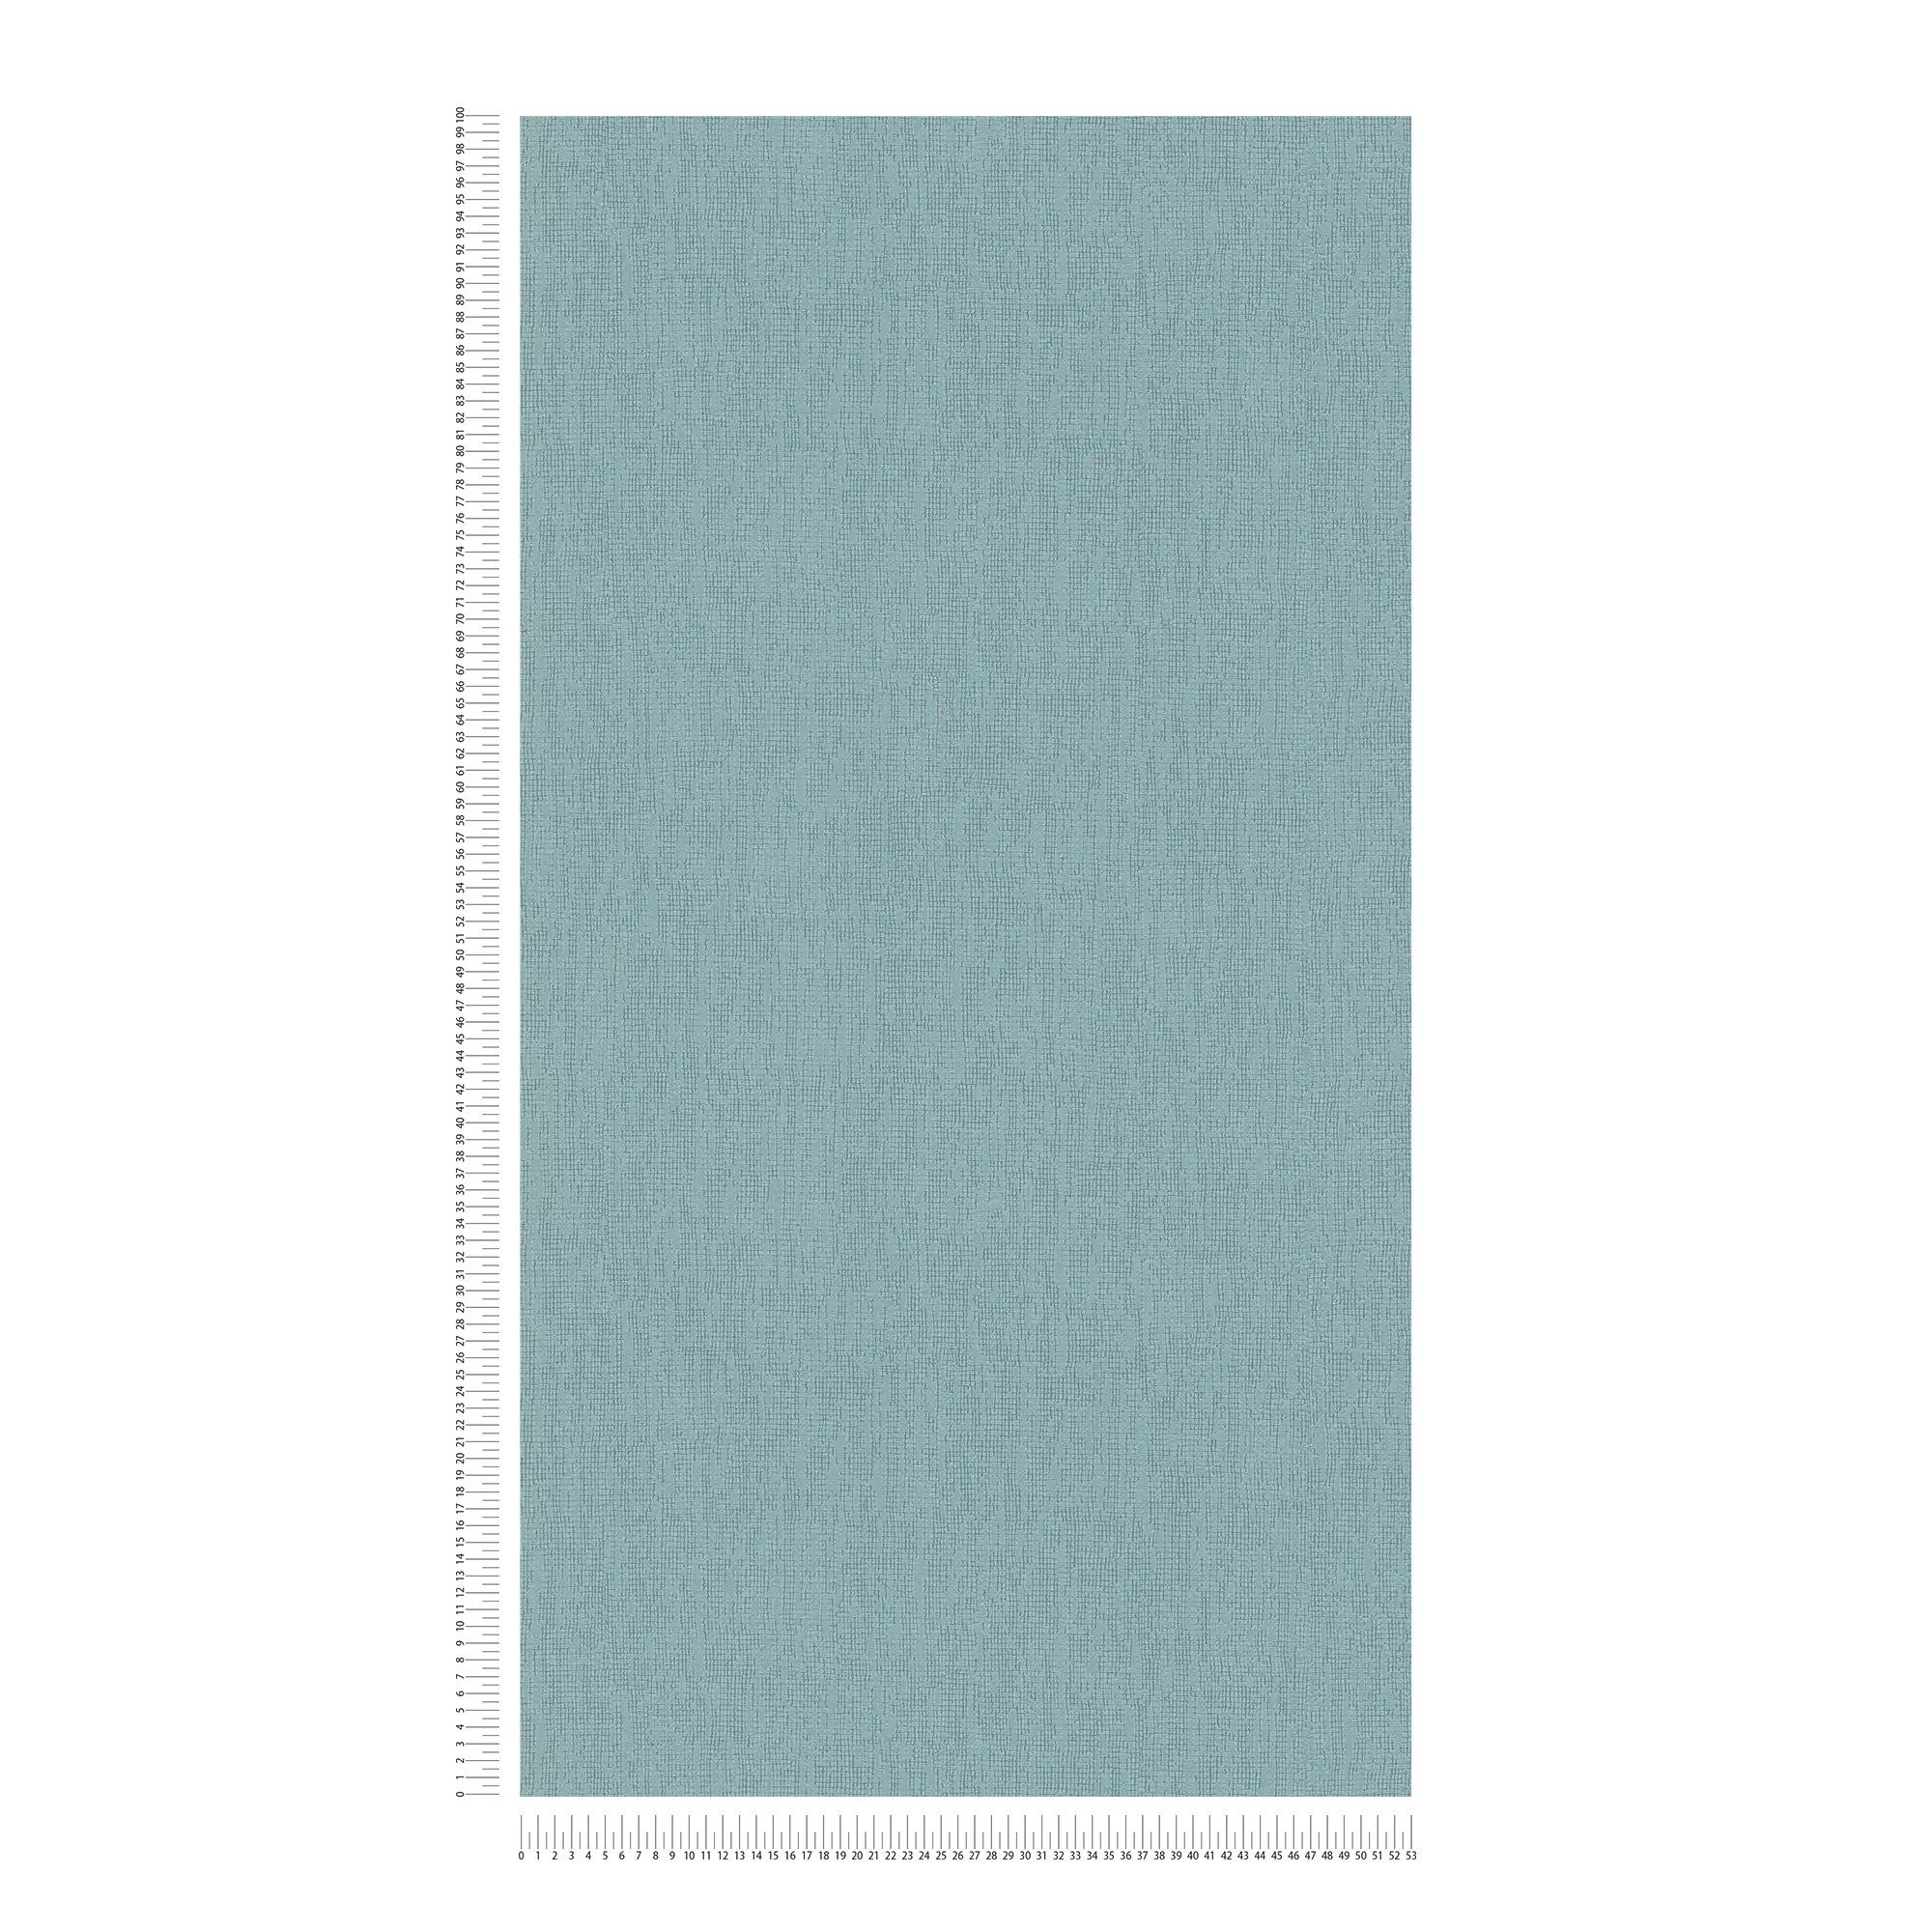             Papel pintado azul claro monocromo con detalles de textura, estilo escandinavo
        